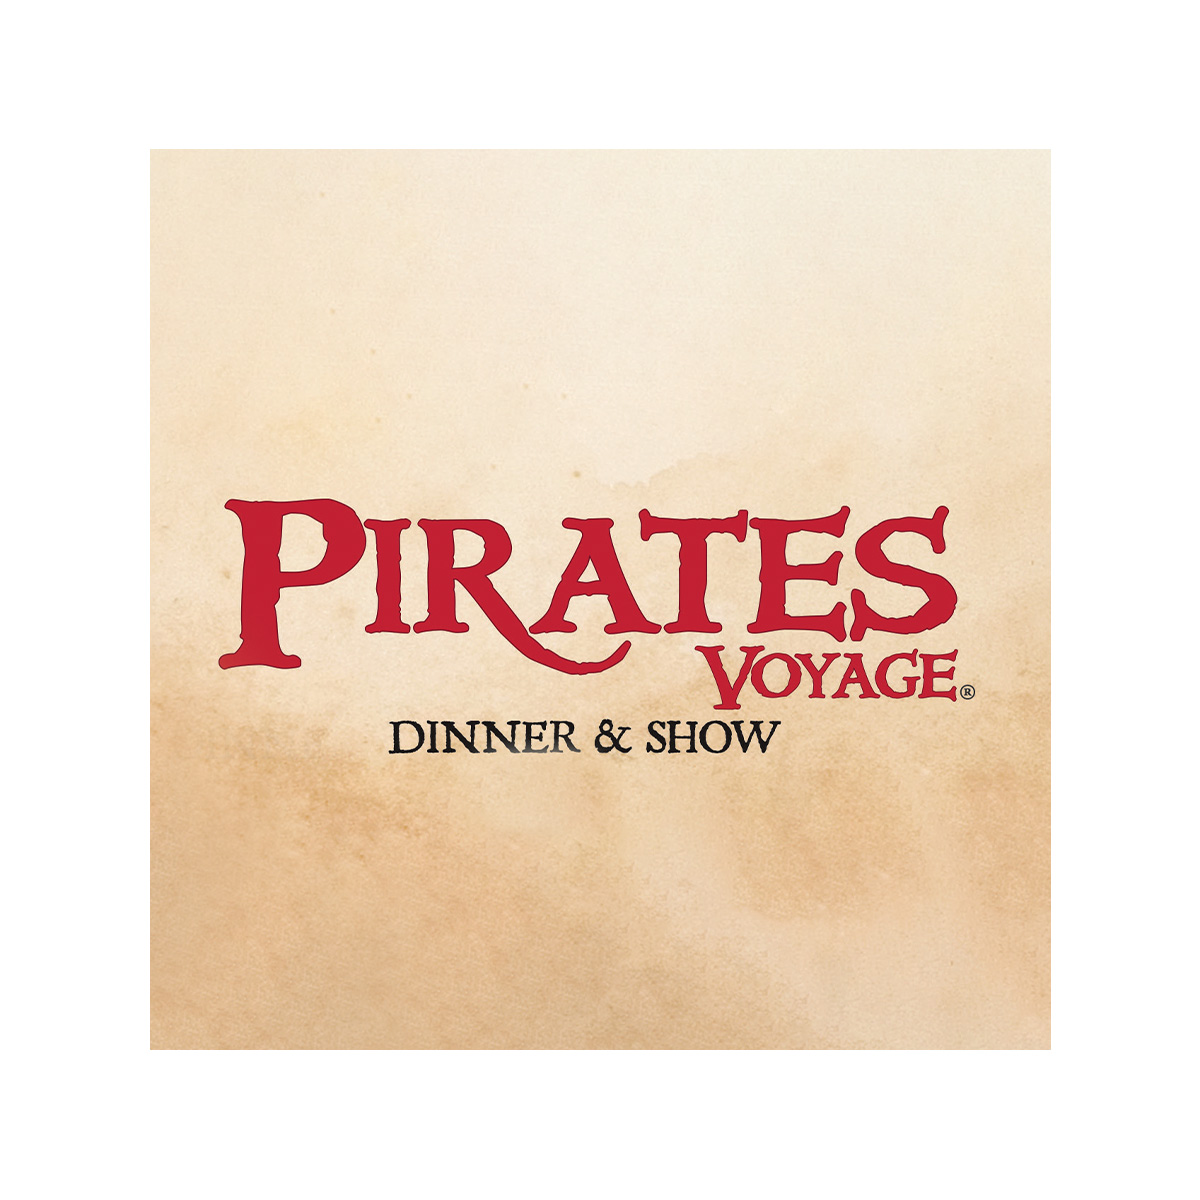 Pirates Voyage SMCB Logo.jpg